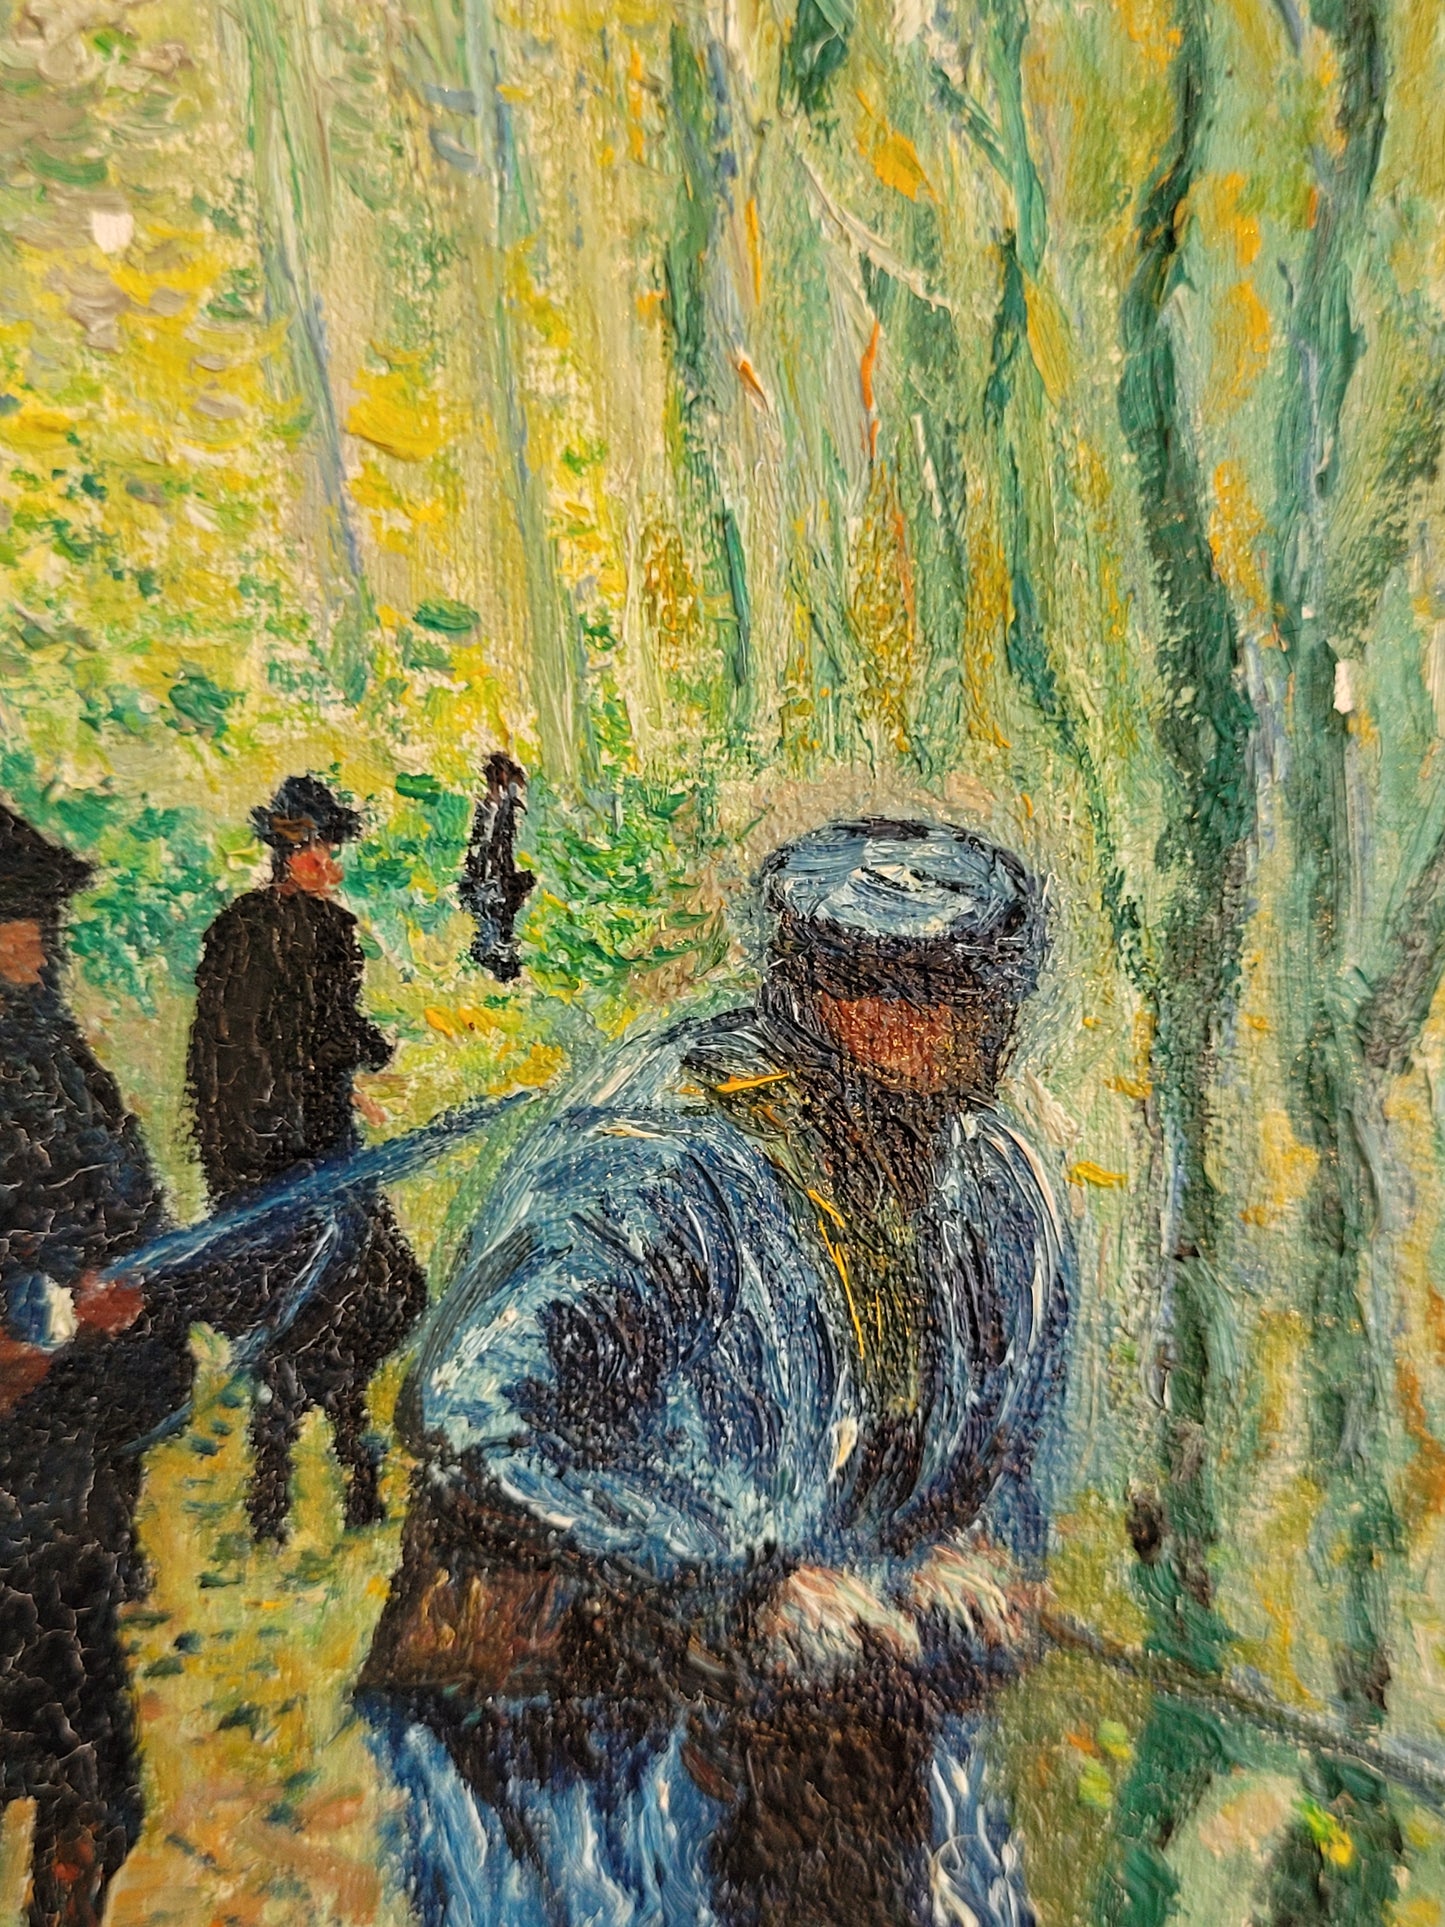 Nach Claude Monet (1840-1926) Ölgemälde die Jagd, Impressionismus